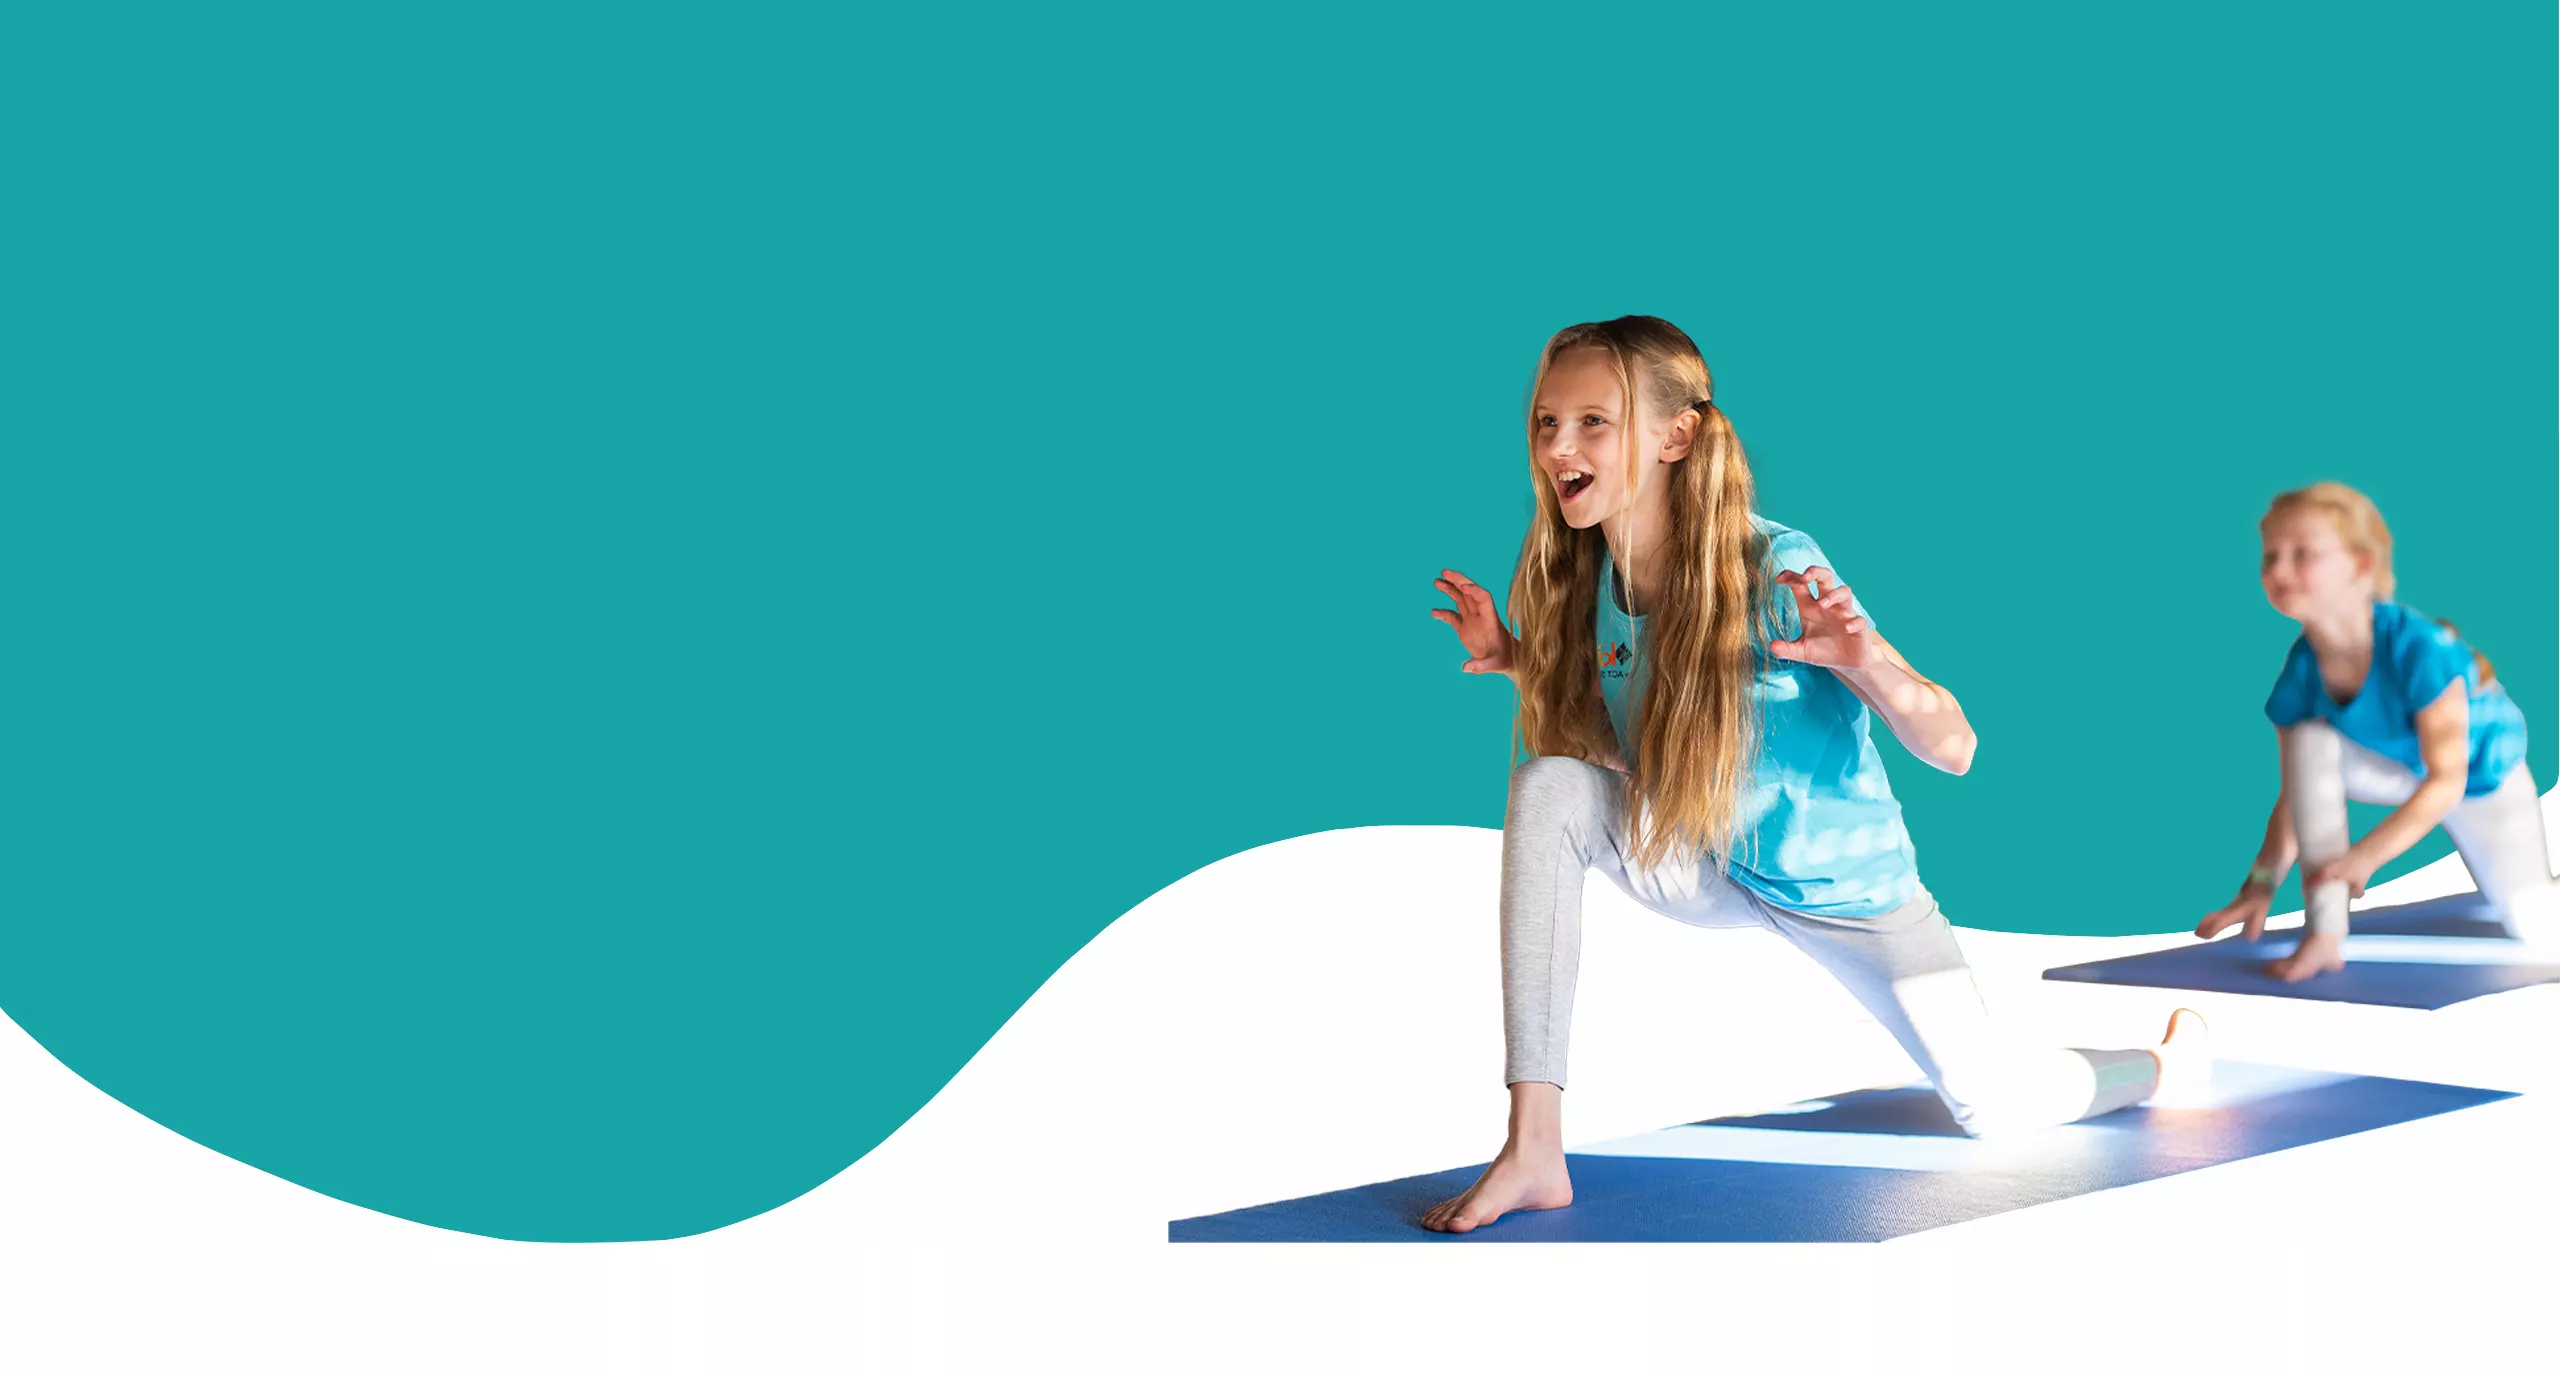 kids4yoga – Das Programm zur Steigerung von Beweglichkeit, Konzentration, Körperwahrnehmung und Entspannung für Kinder.